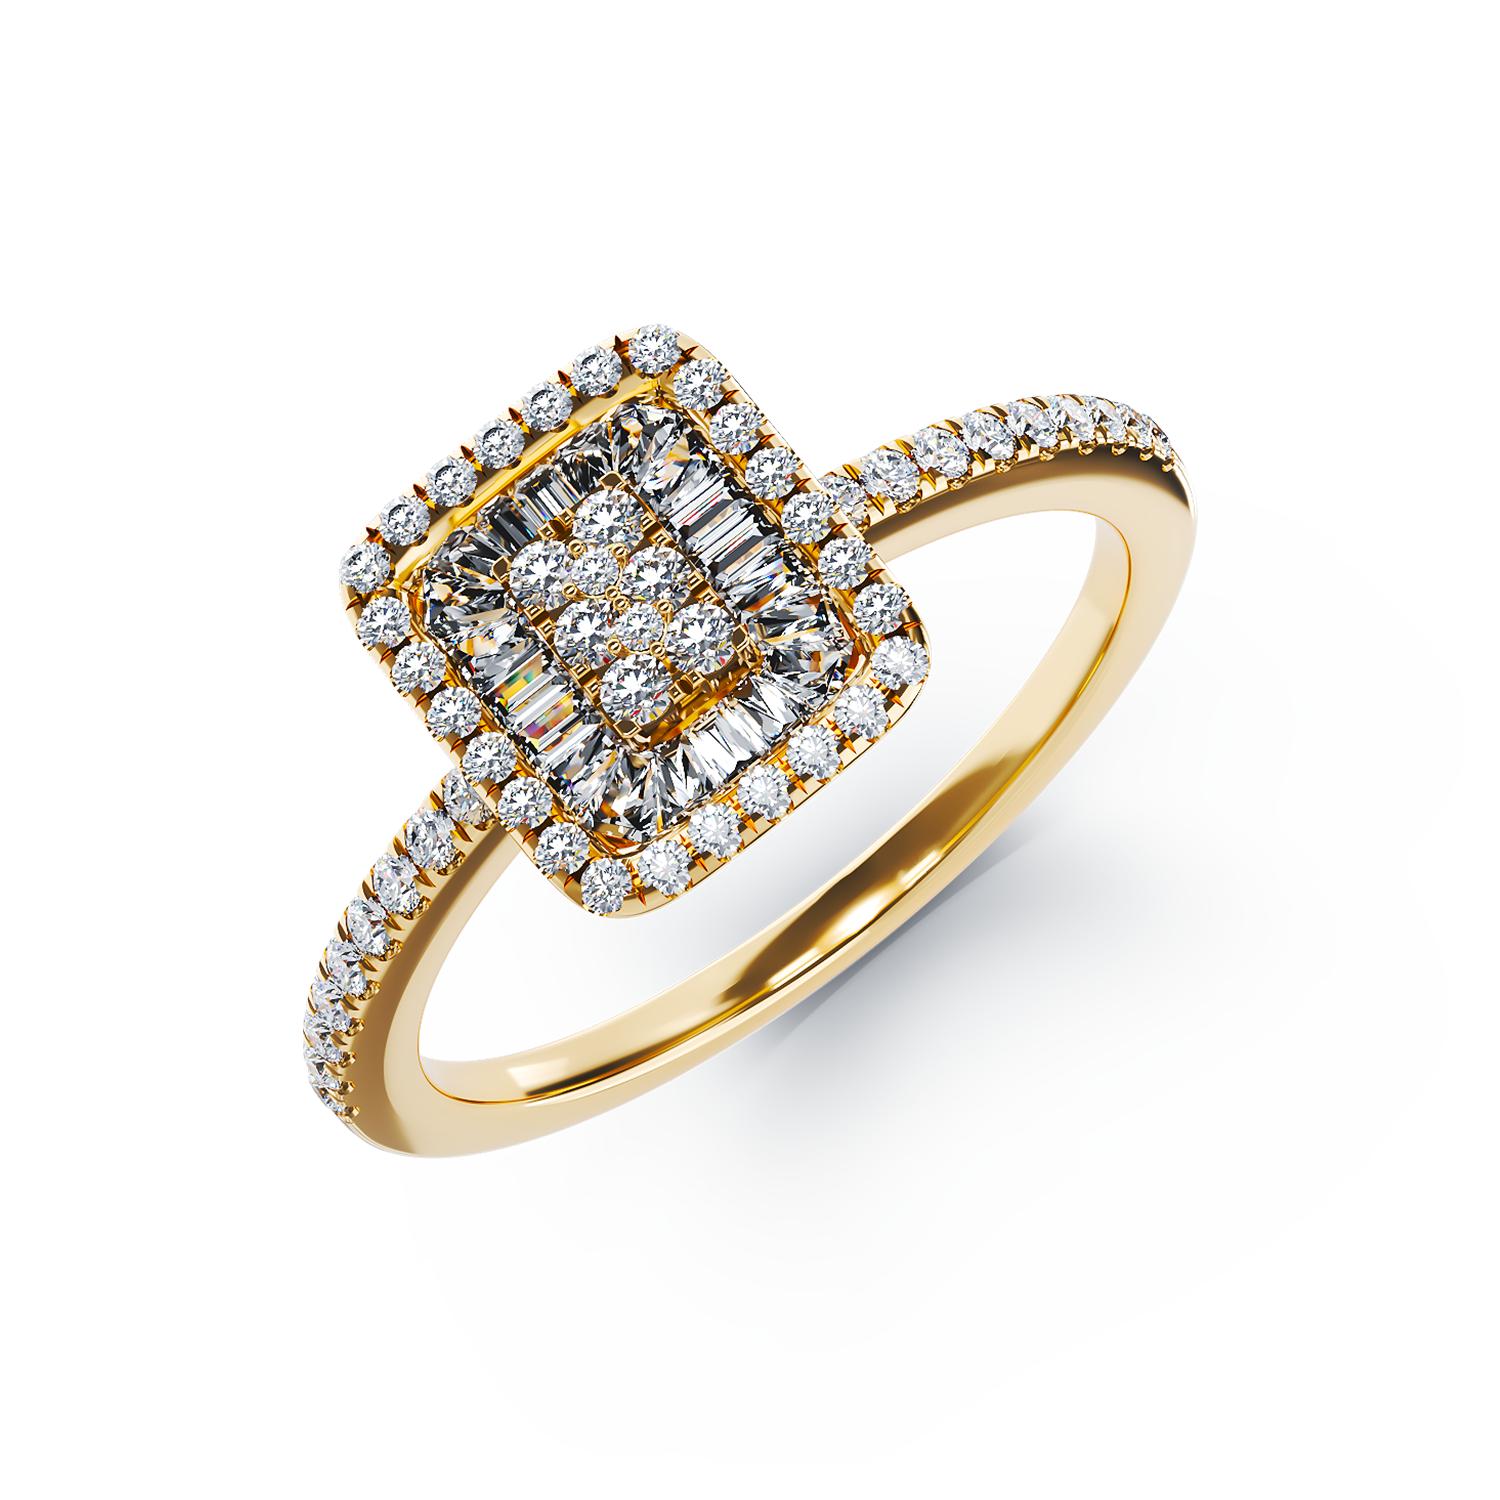 Eljegyzési gyűrű 18K-os sárga aranyból 0,12ct gyémánttal és 0,17ct gyémánttal. Gramm: 2,83